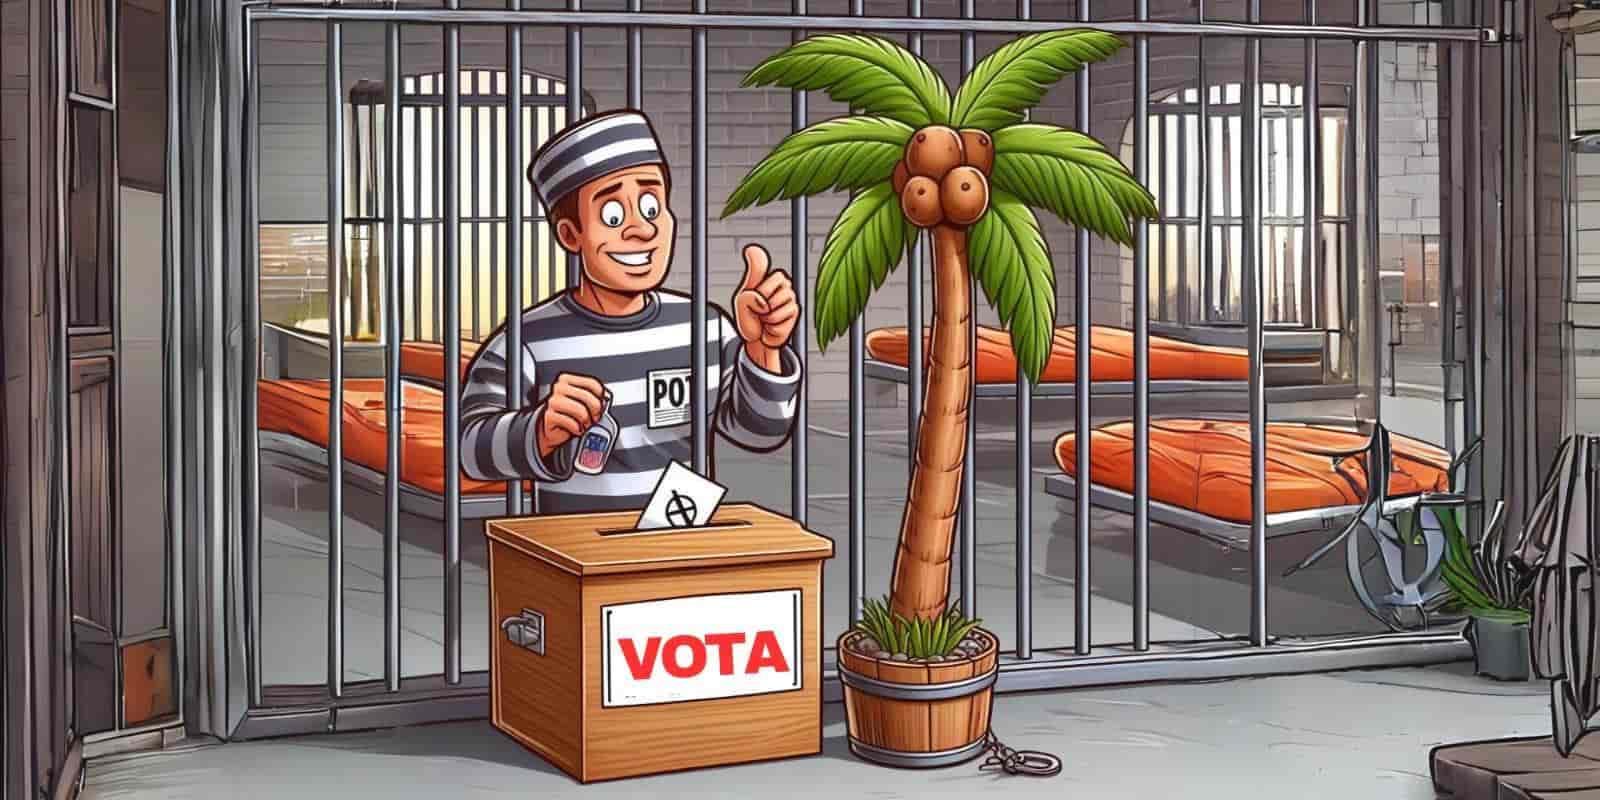 “El Cui, no quiere dejar votar a presos sin sentencia